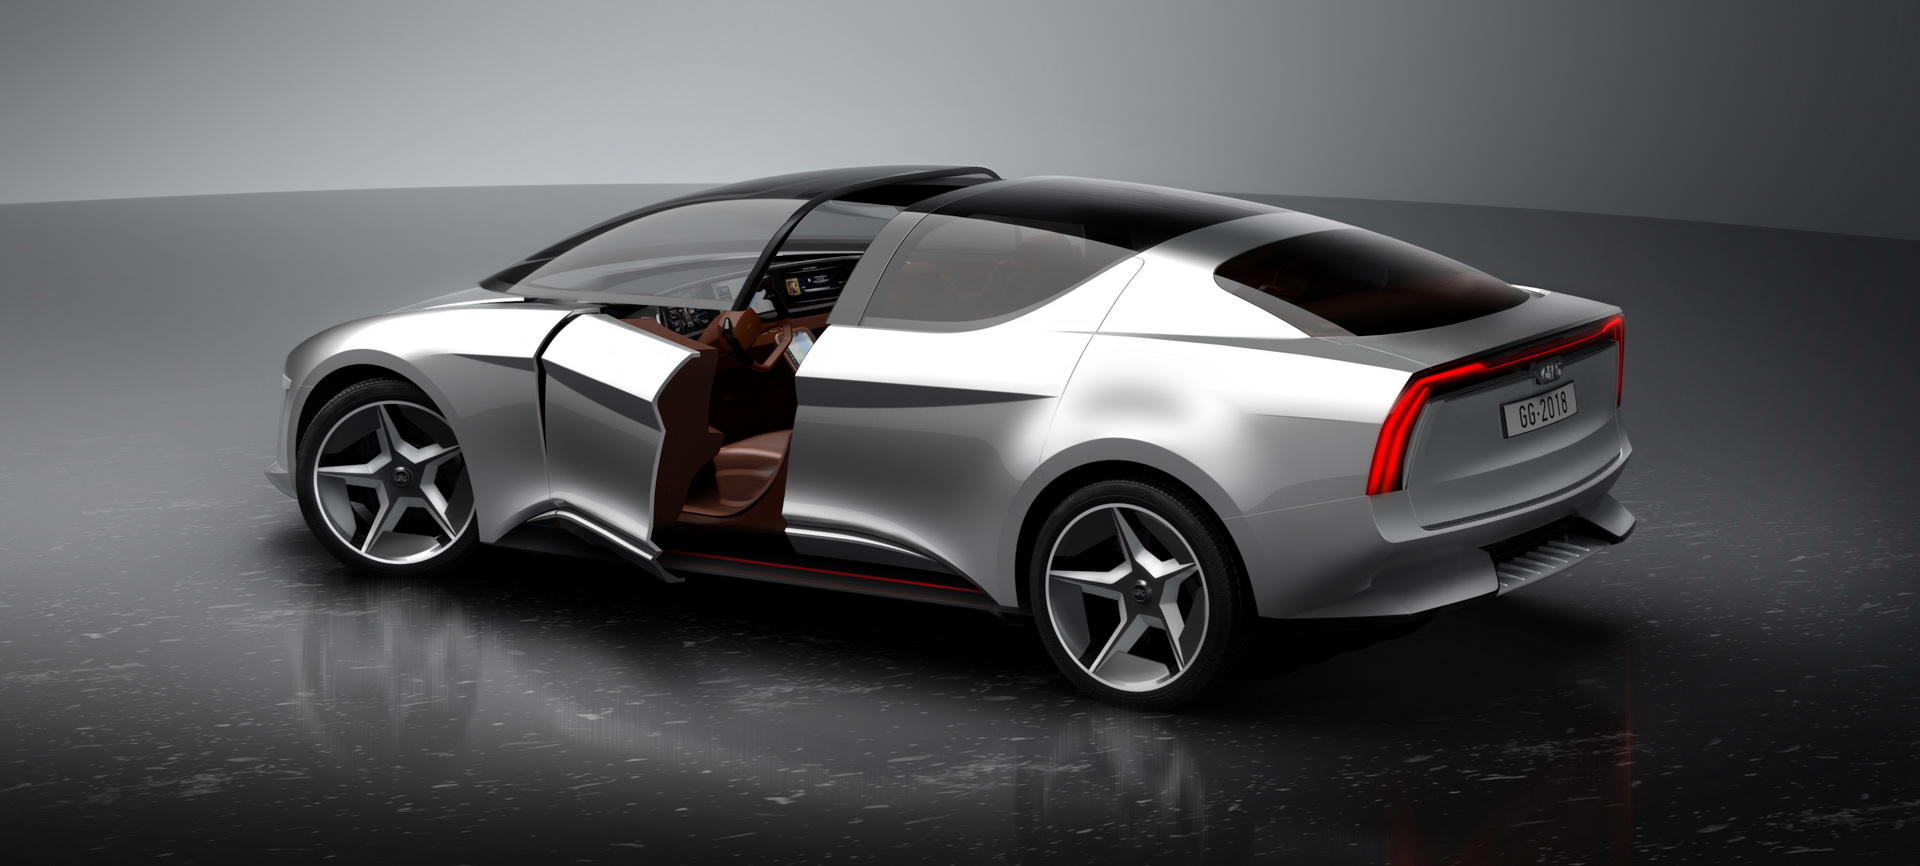 Geneva International Motor Show, gfg-style-sybilla-unveiled-geneva-4: GFG Sibylla EV Concept: Inovasi Terkini Pada Sebuah Mobil